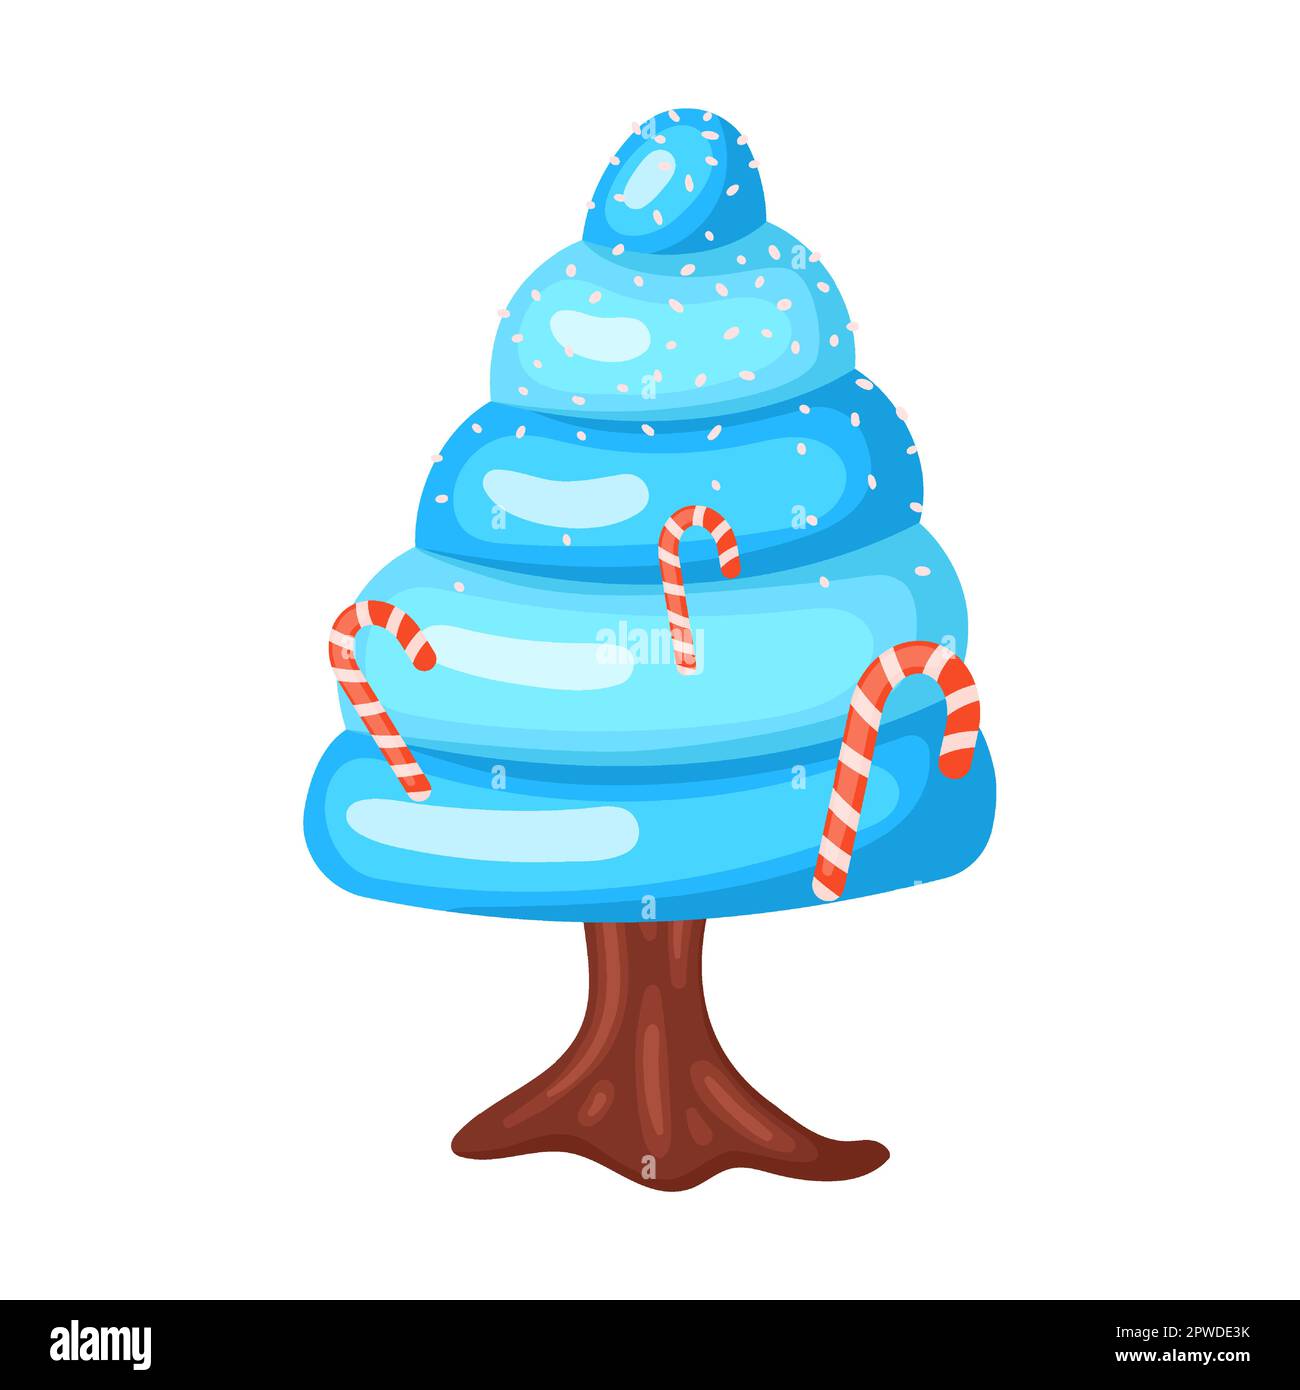 Candie in Form einer cremigen Baumpyramide mit gestreiften Süßigkeiten und Lutschtabletten, Vektordarstellung. Fantasy Land Caramel und Schokolade Desserts, Cupcakes Stock Vektor